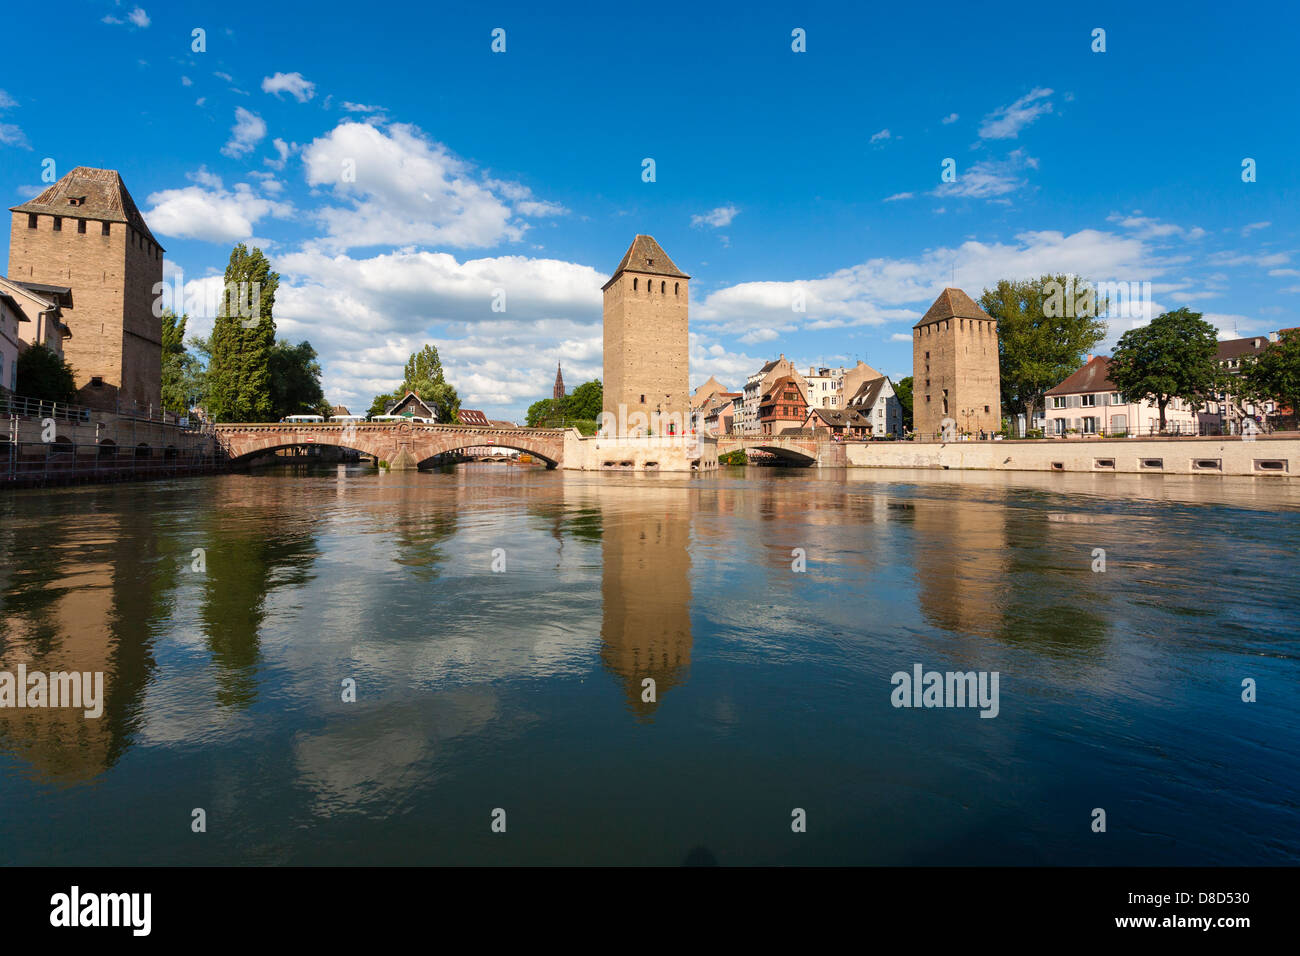 Vue du bateau de tourisme sur l'Ill des Ponts-Couverts / Ponts Couverts, Petite France, Strasbourg, Alsace, France Banque D'Images